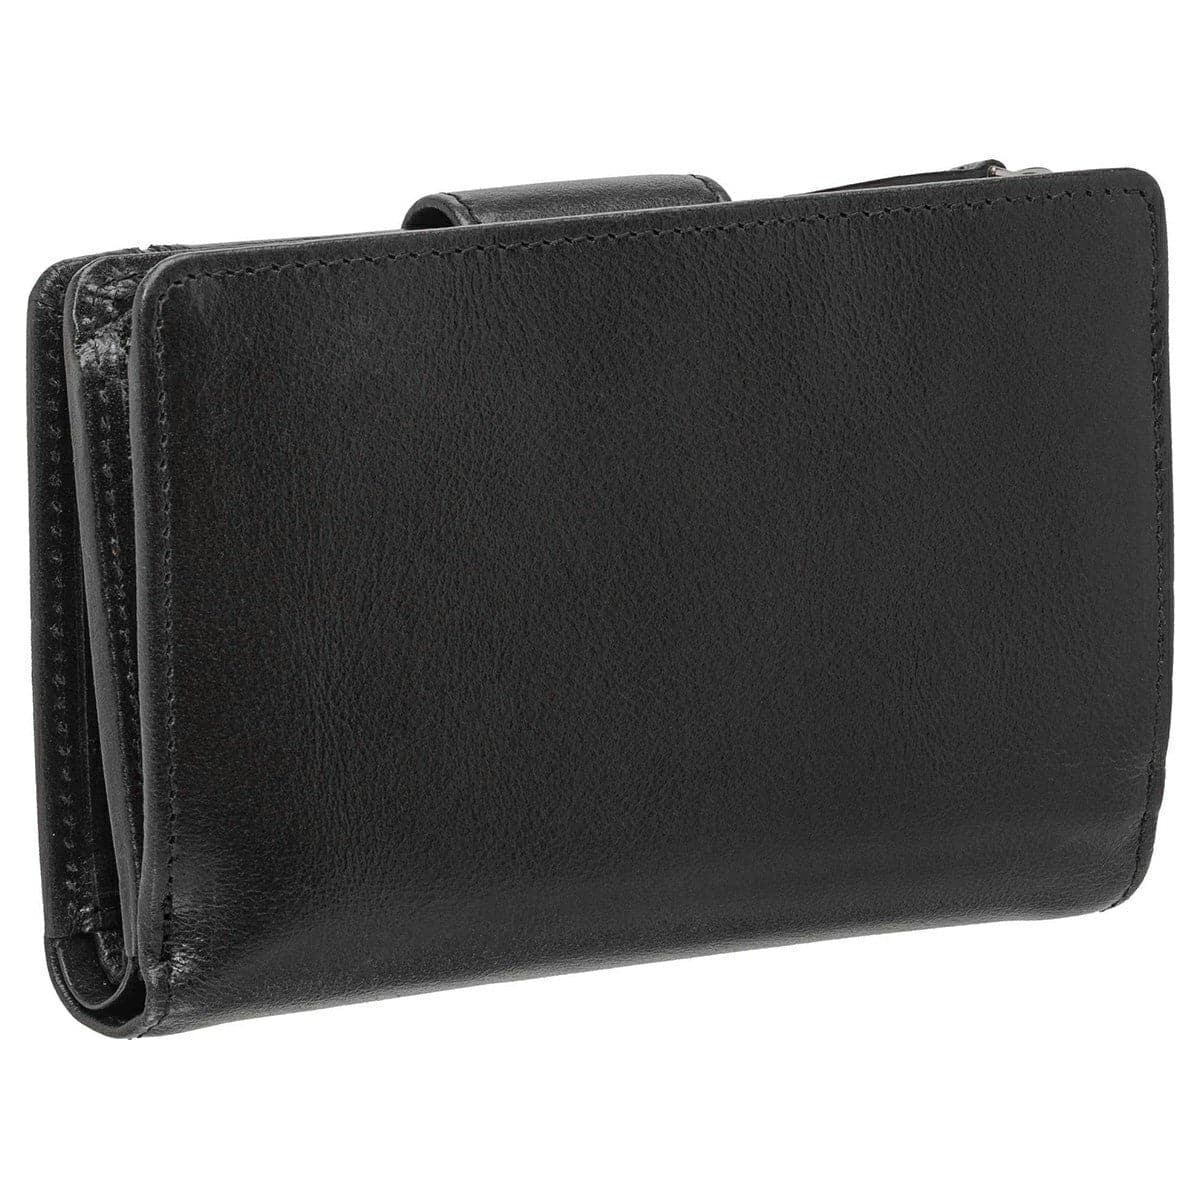 Mancini South Beach 3.75" RFID Secure Medium Clutch Wallet